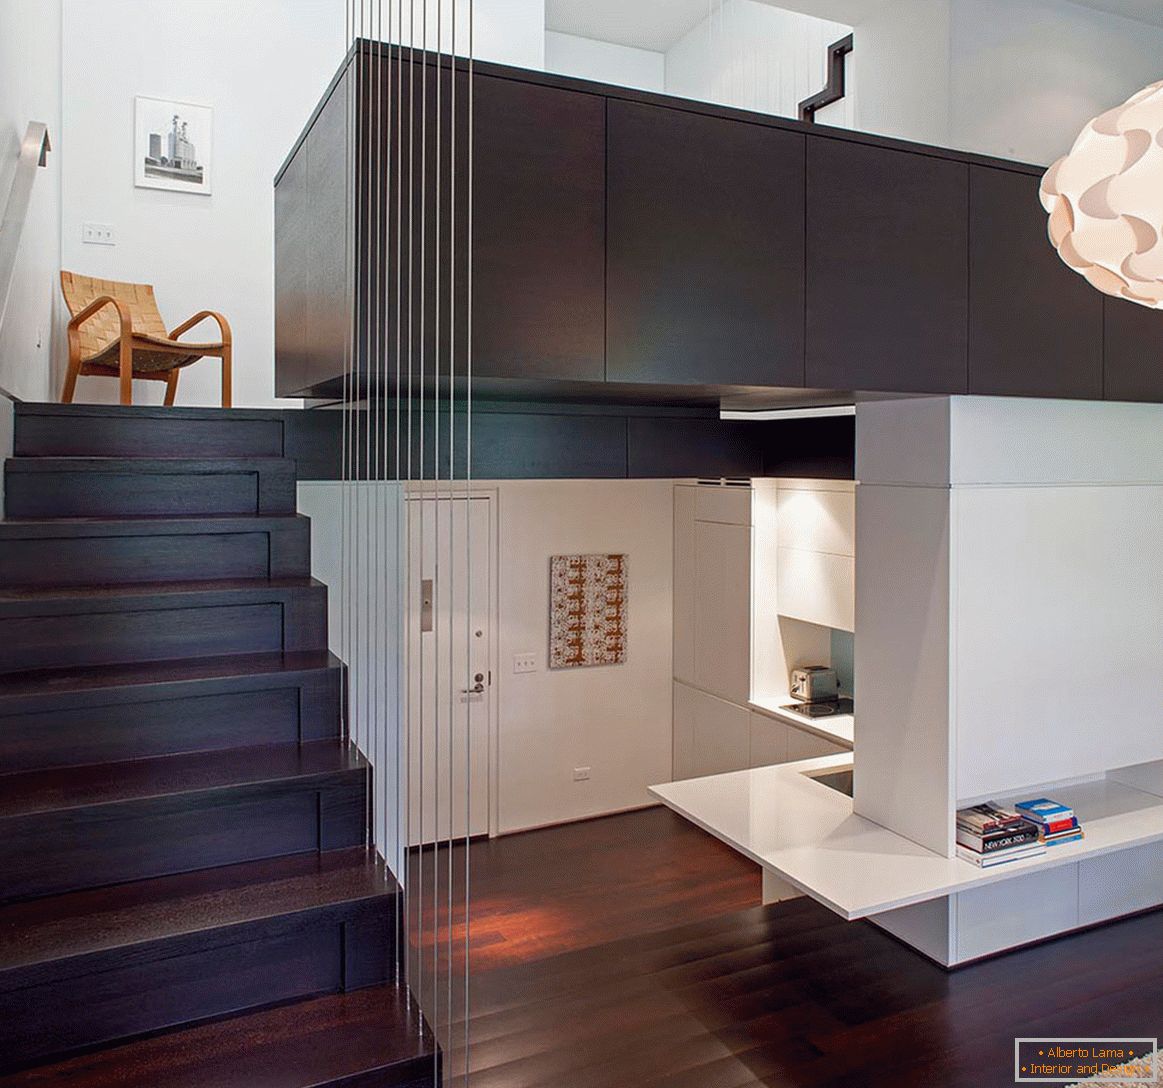 Design moderno de um pequeno apartamento